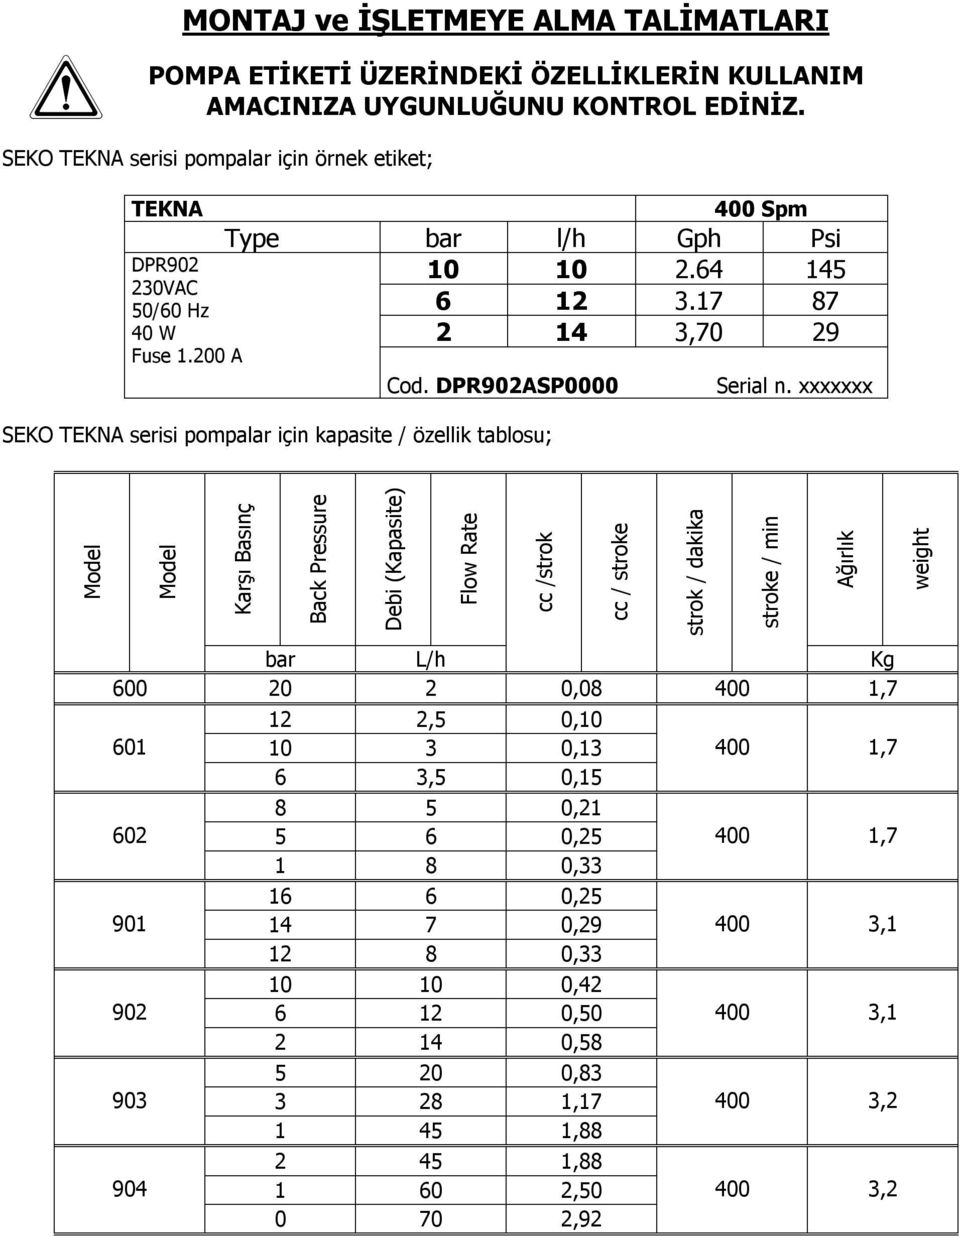 DPR902ASP0000 SEKO TEKNA serisi pompalar için kapasite / özellik tablosu; Serial n.